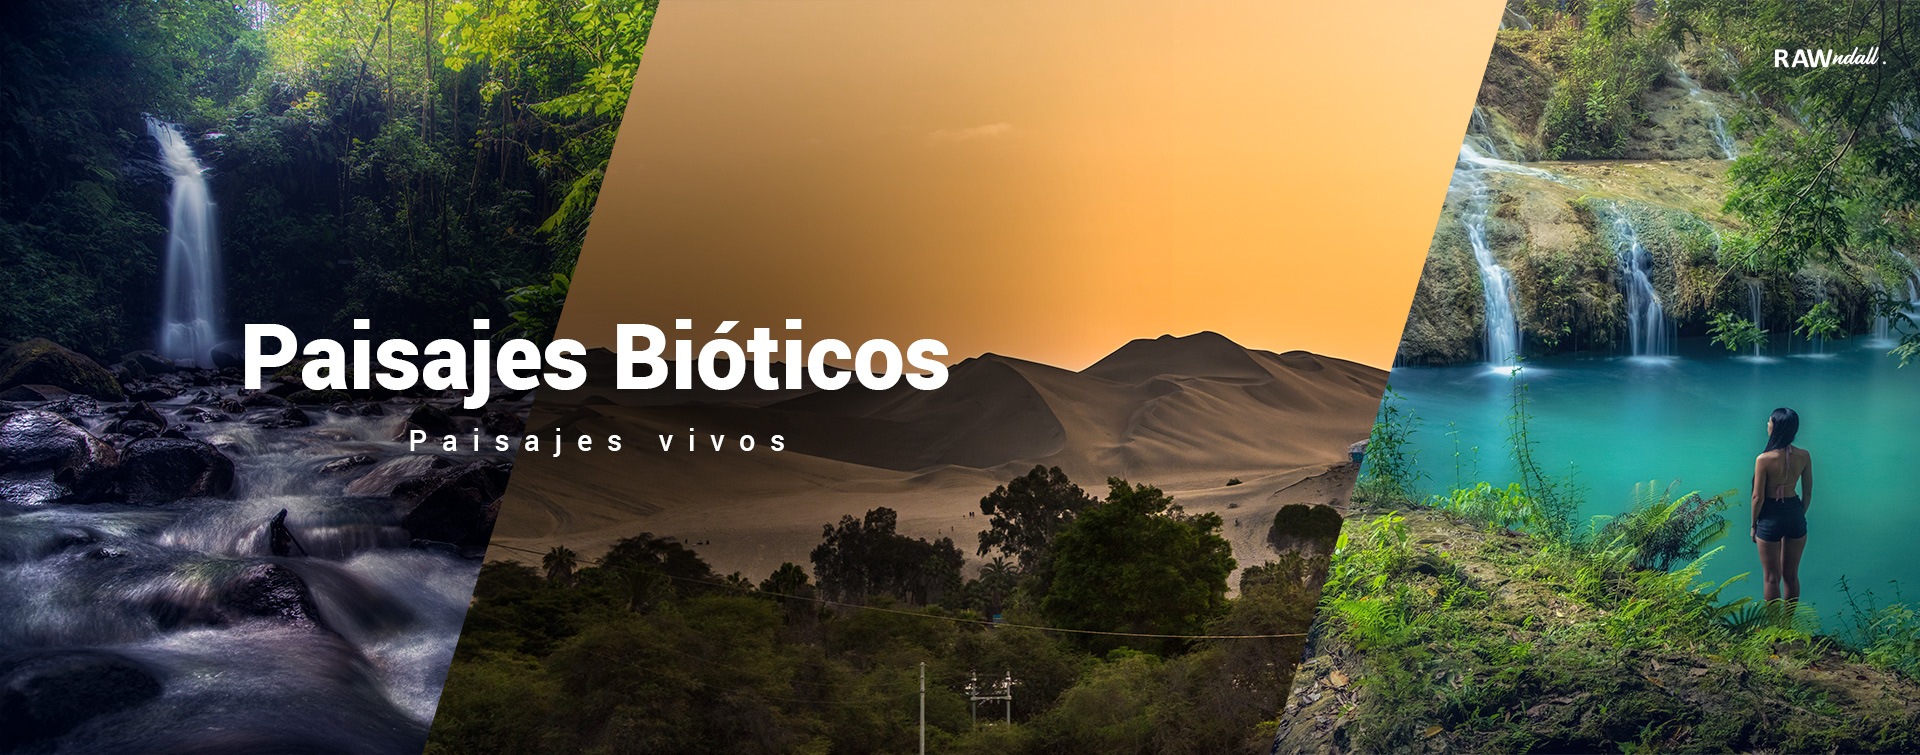 Tres fotos de paisajes bioticos, la primera es una catarata en Costa Rica, la segunda es un desierto en Peru y la tercera un rio en Guatemala.